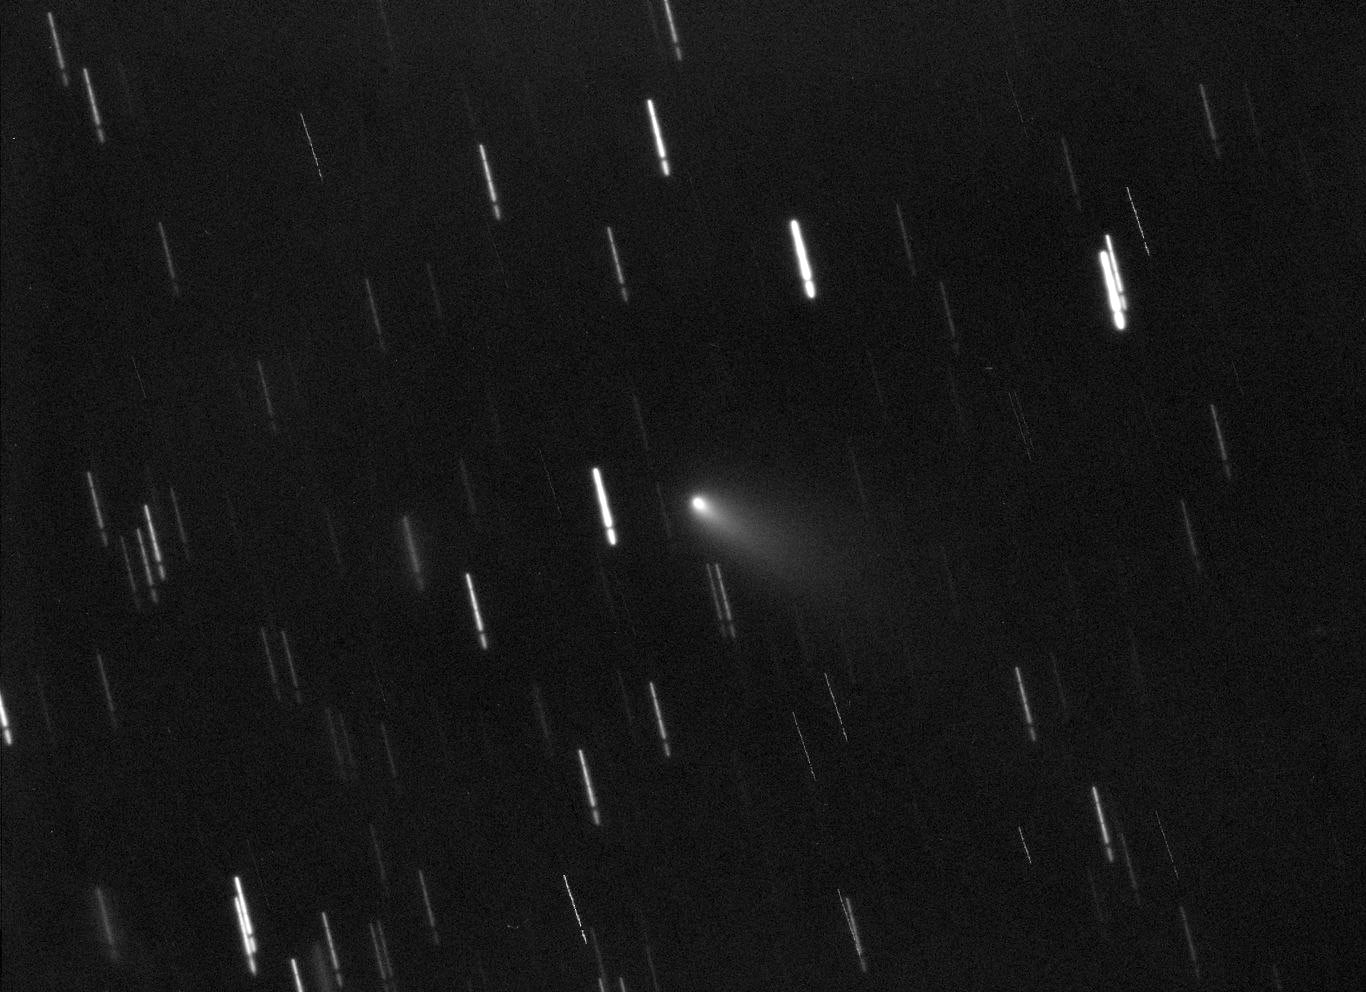 今年第一颗长周期彗星C/2021 A1 Leonard将于本月12日通过地球 黎明时分位于天蝎座